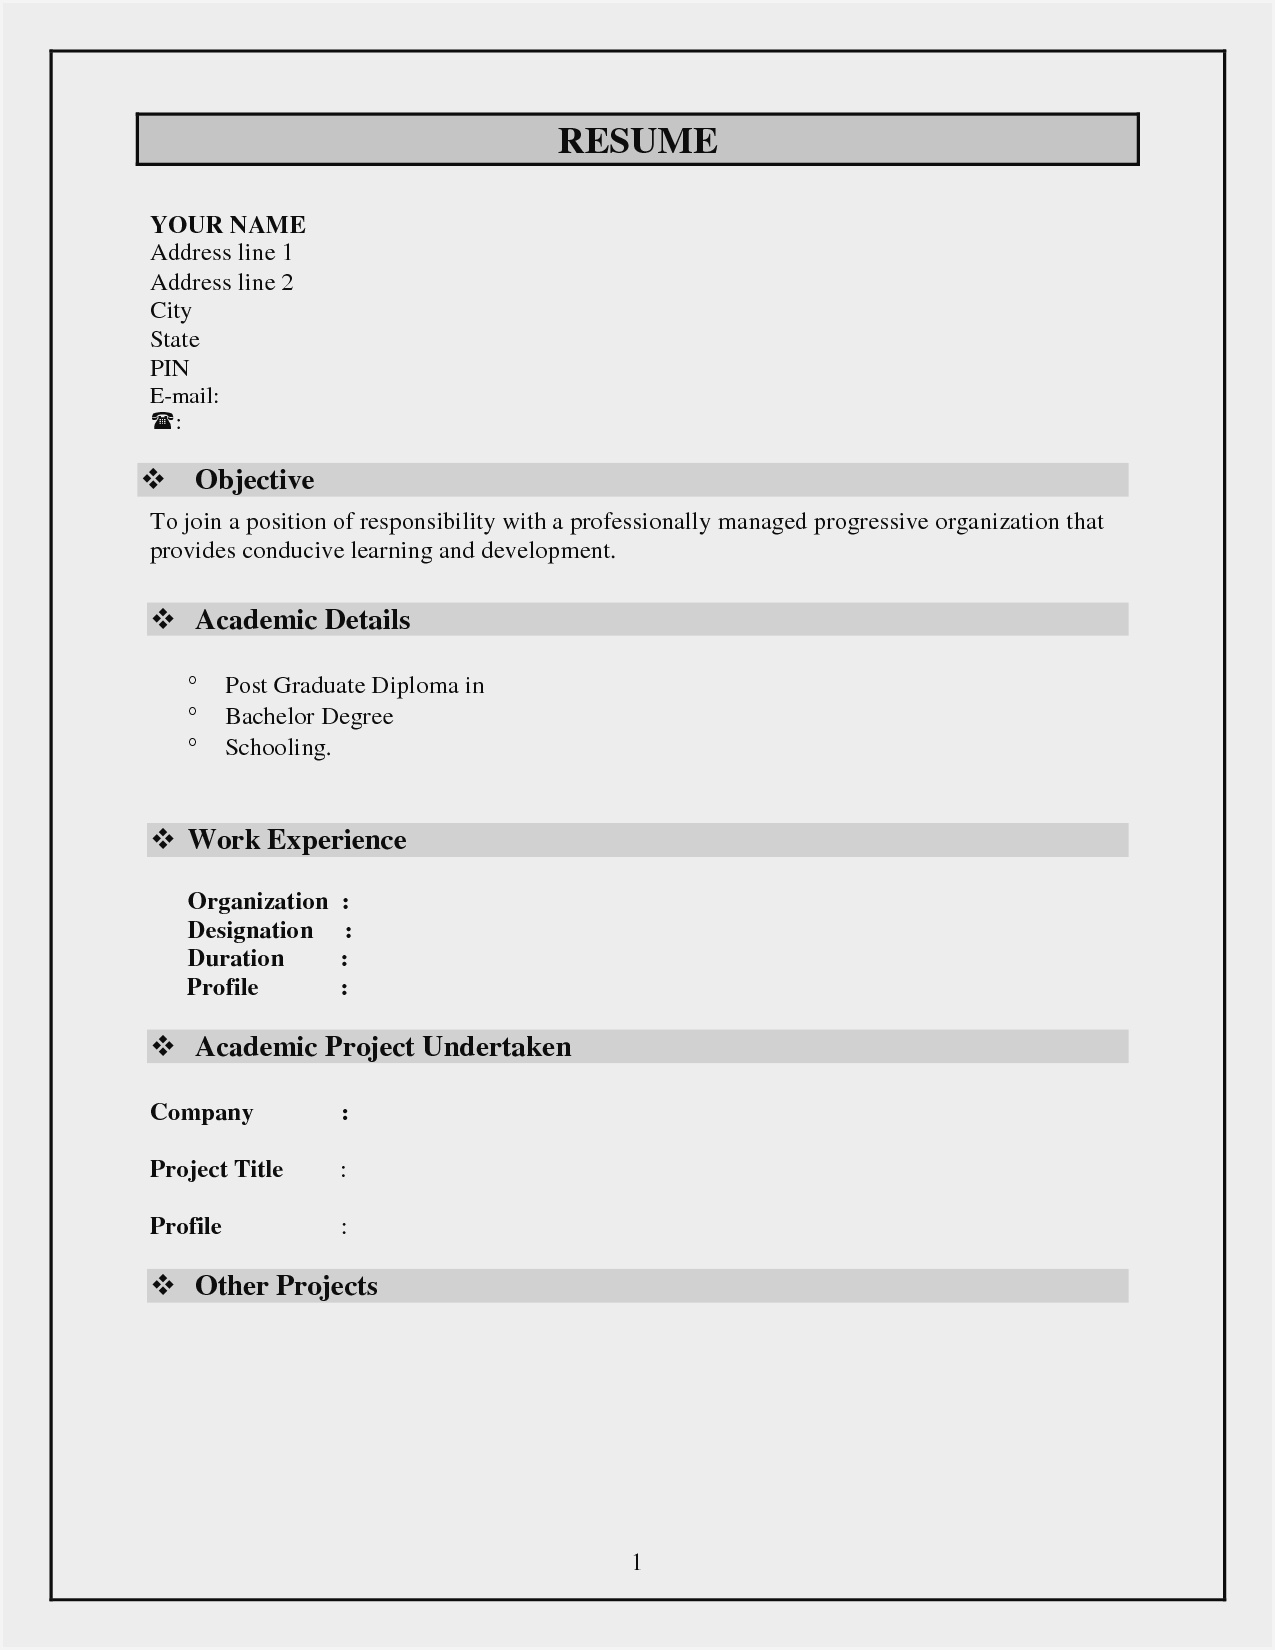 Blank Resume Format Pdf Free Download - Resume : Resume With Free Blank Resume Templates For Microsoft Word